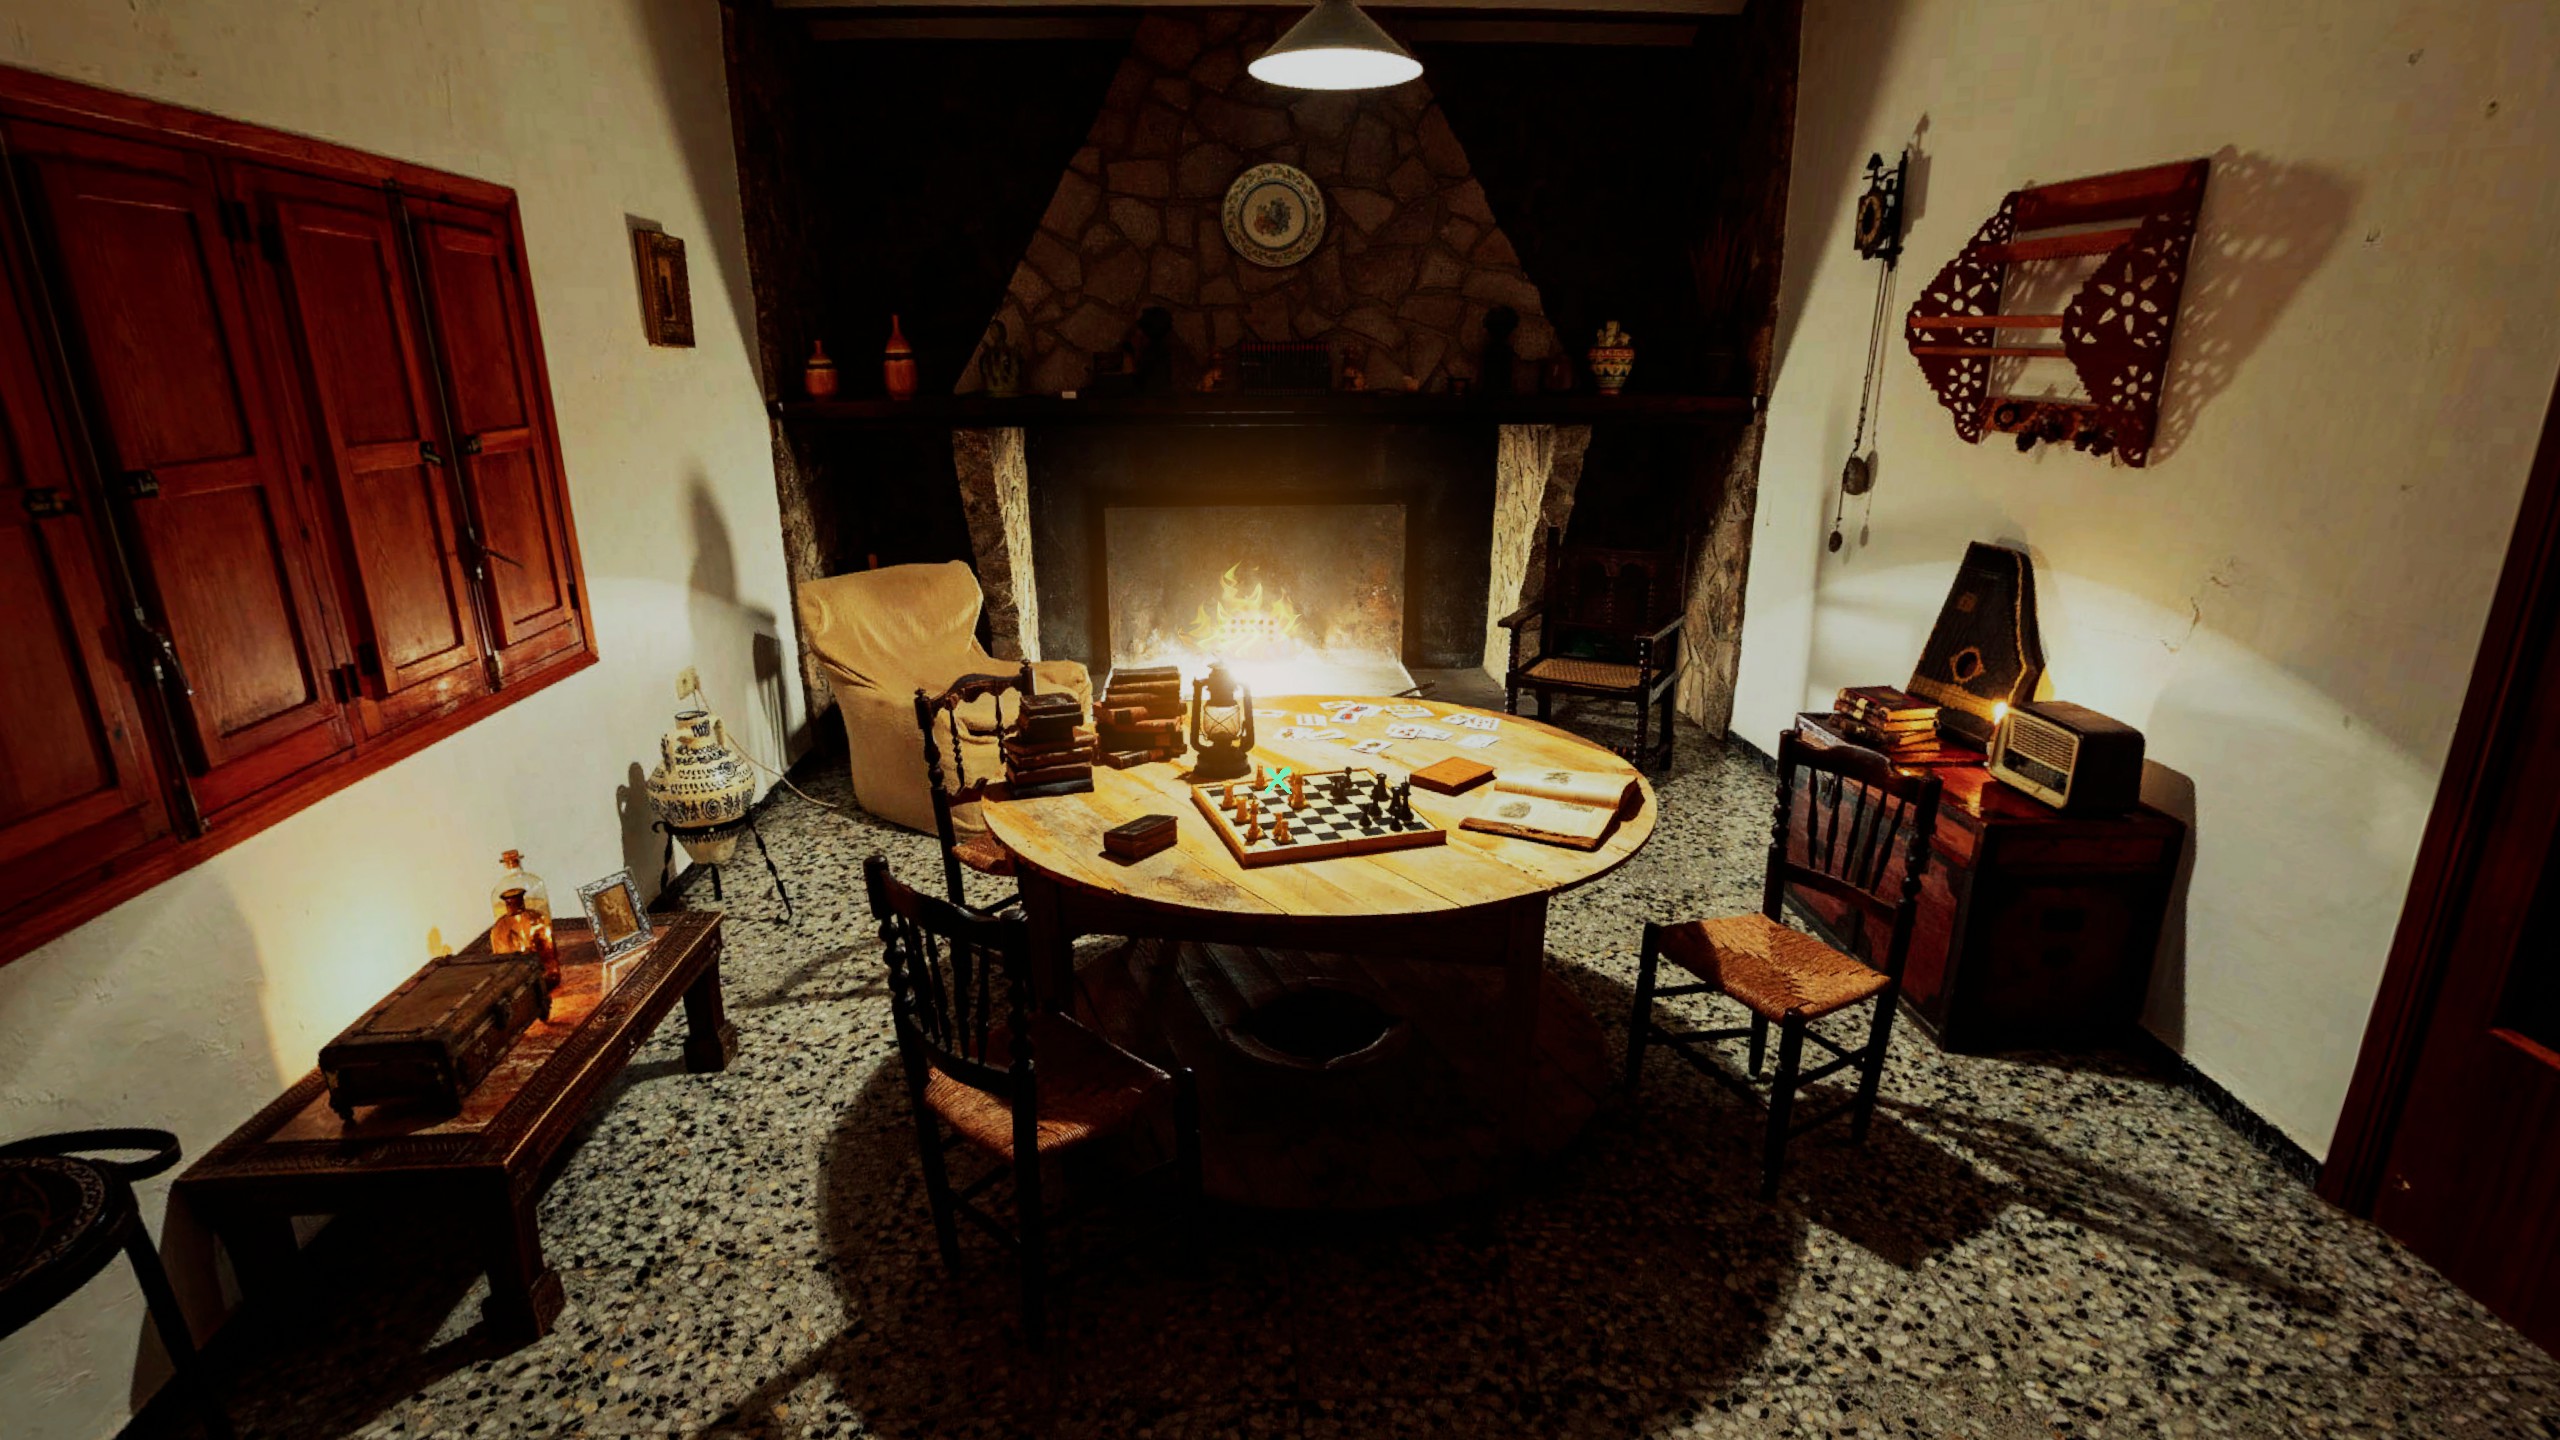 cozy interior featuring table, books, et cetera